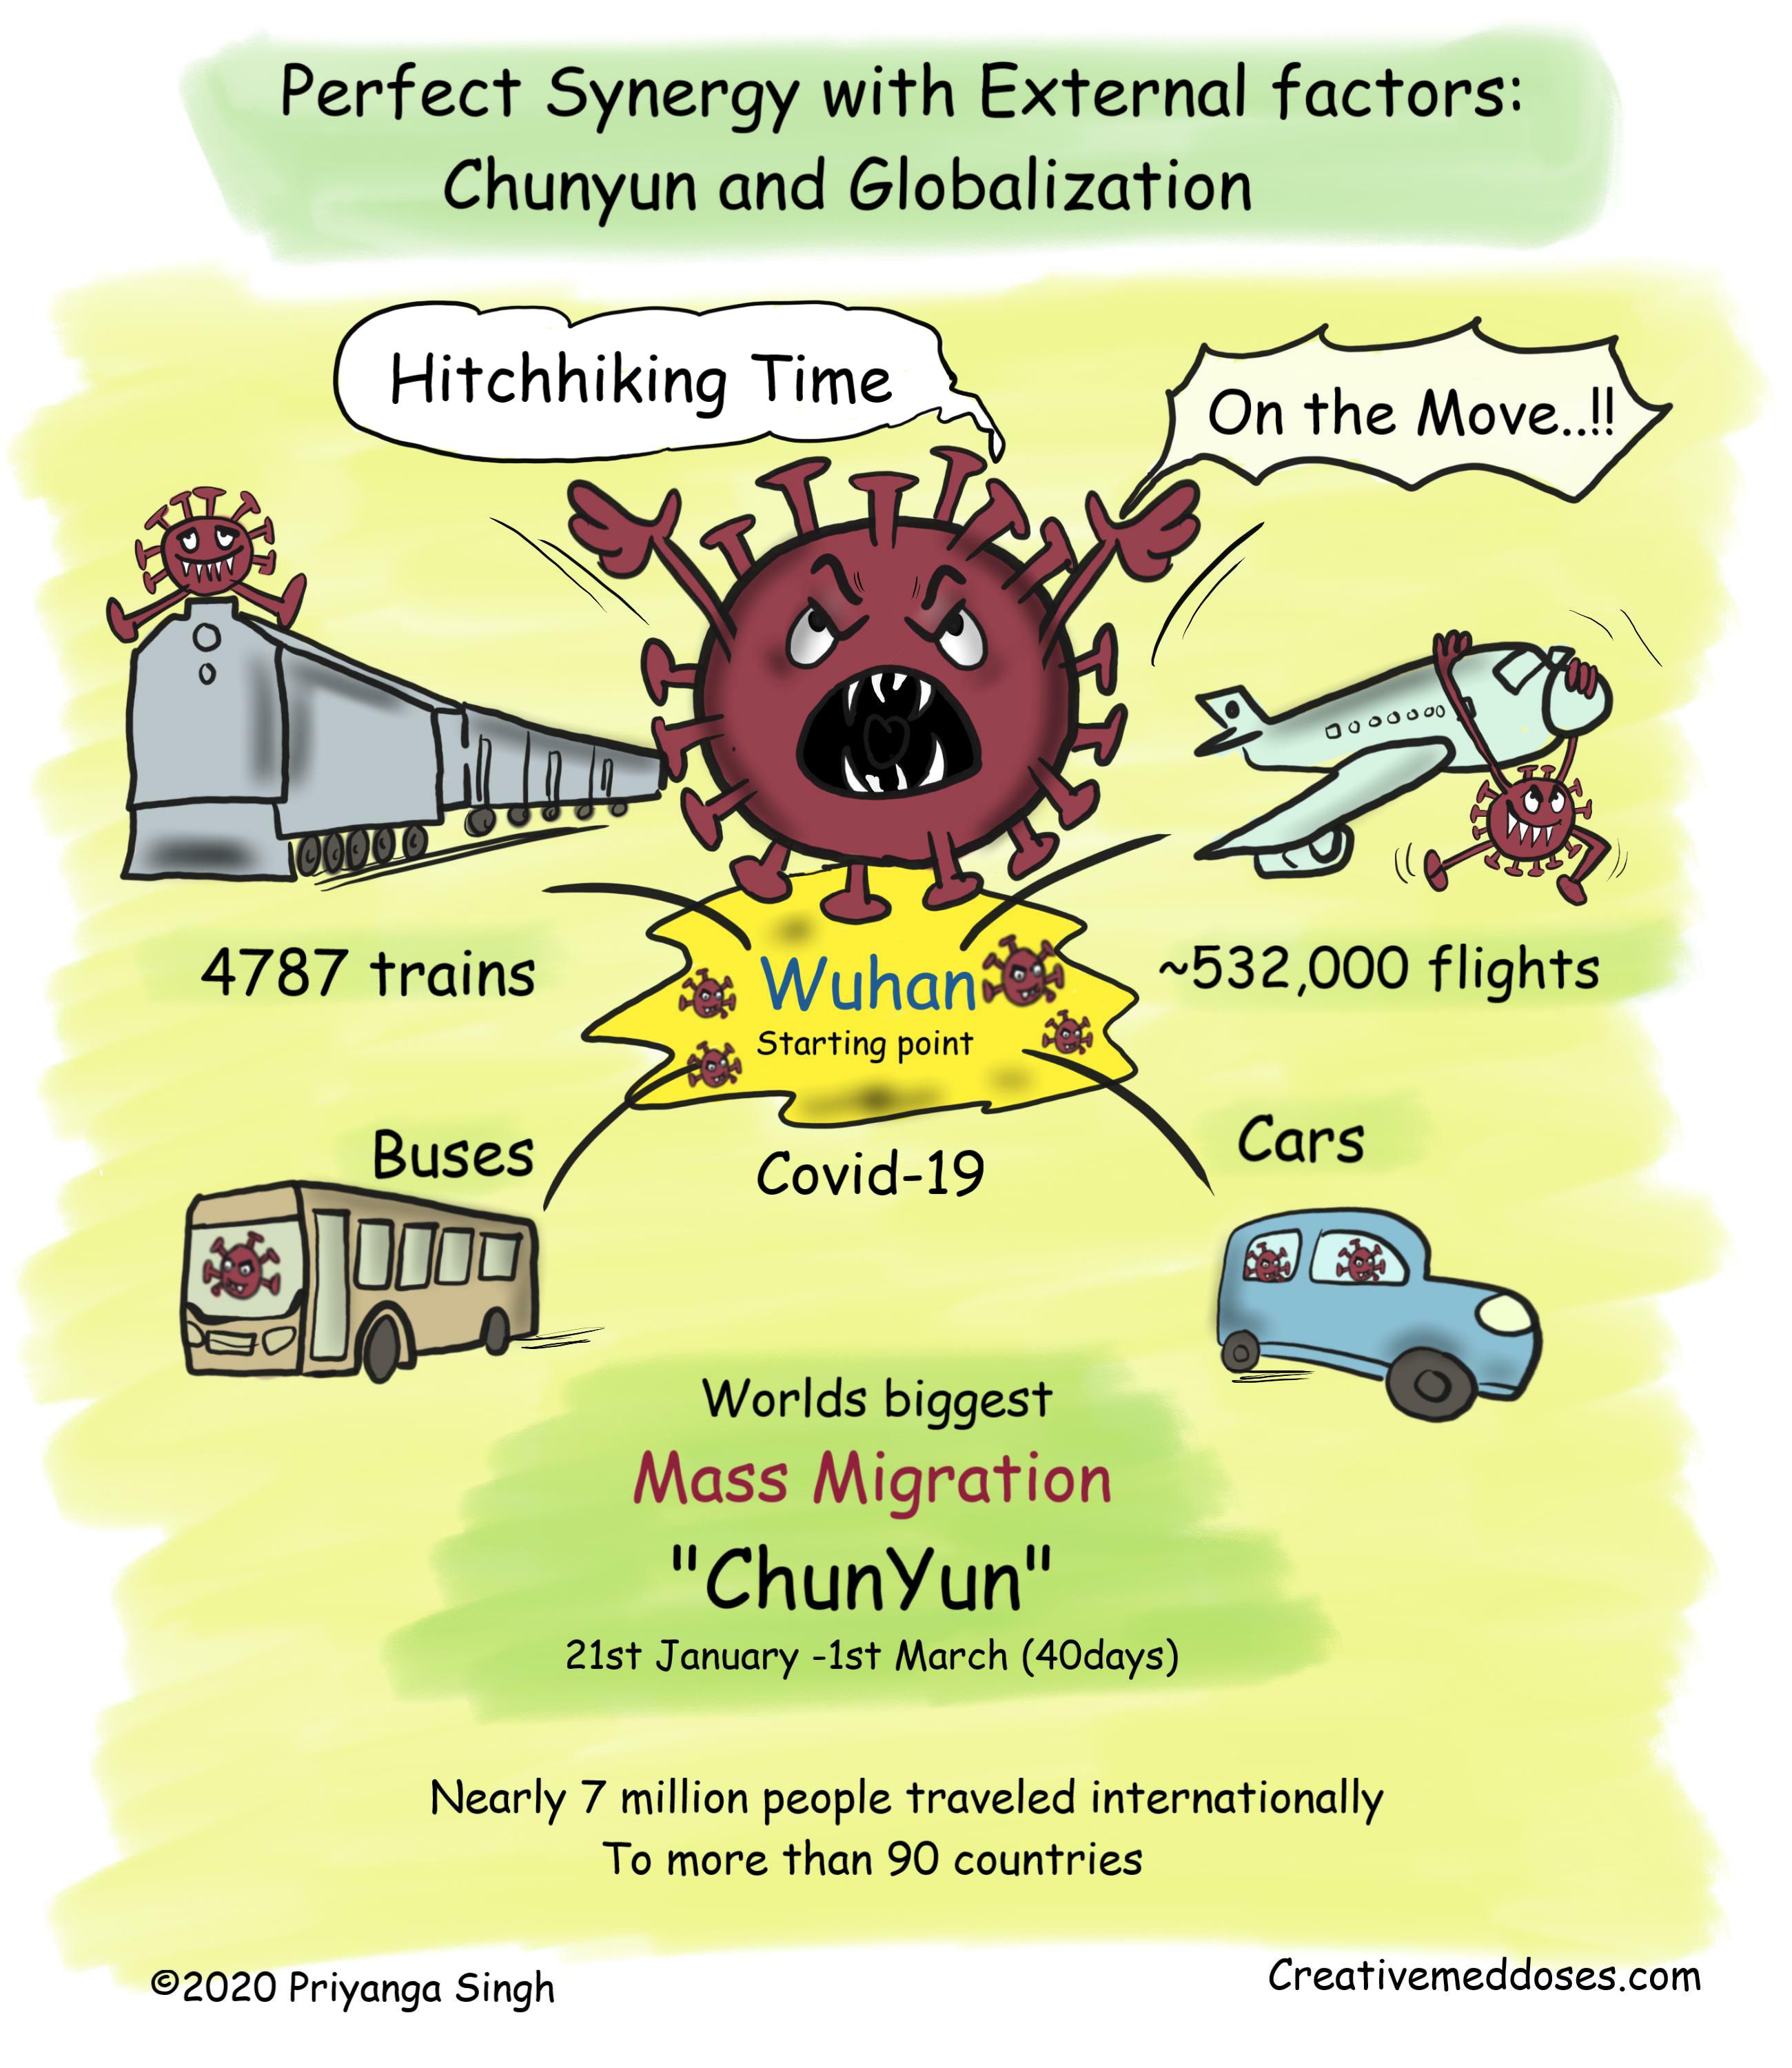 chunyun and globalization jpg.jpg